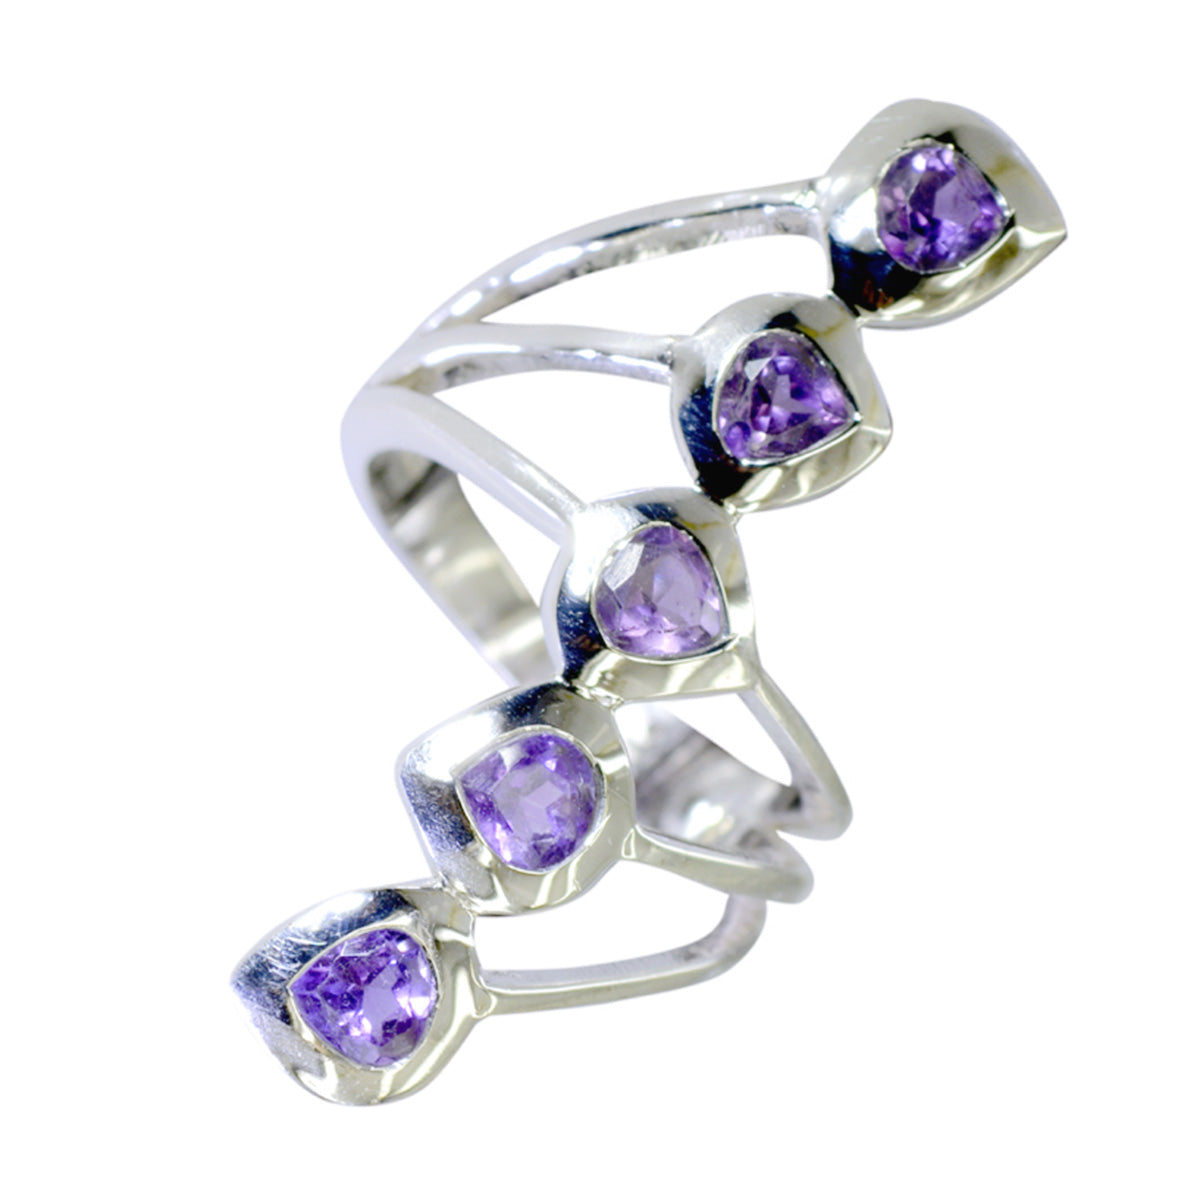 Riyo Very Nice Gems Amethyst Sterling Silver Rings Dance Jewelry